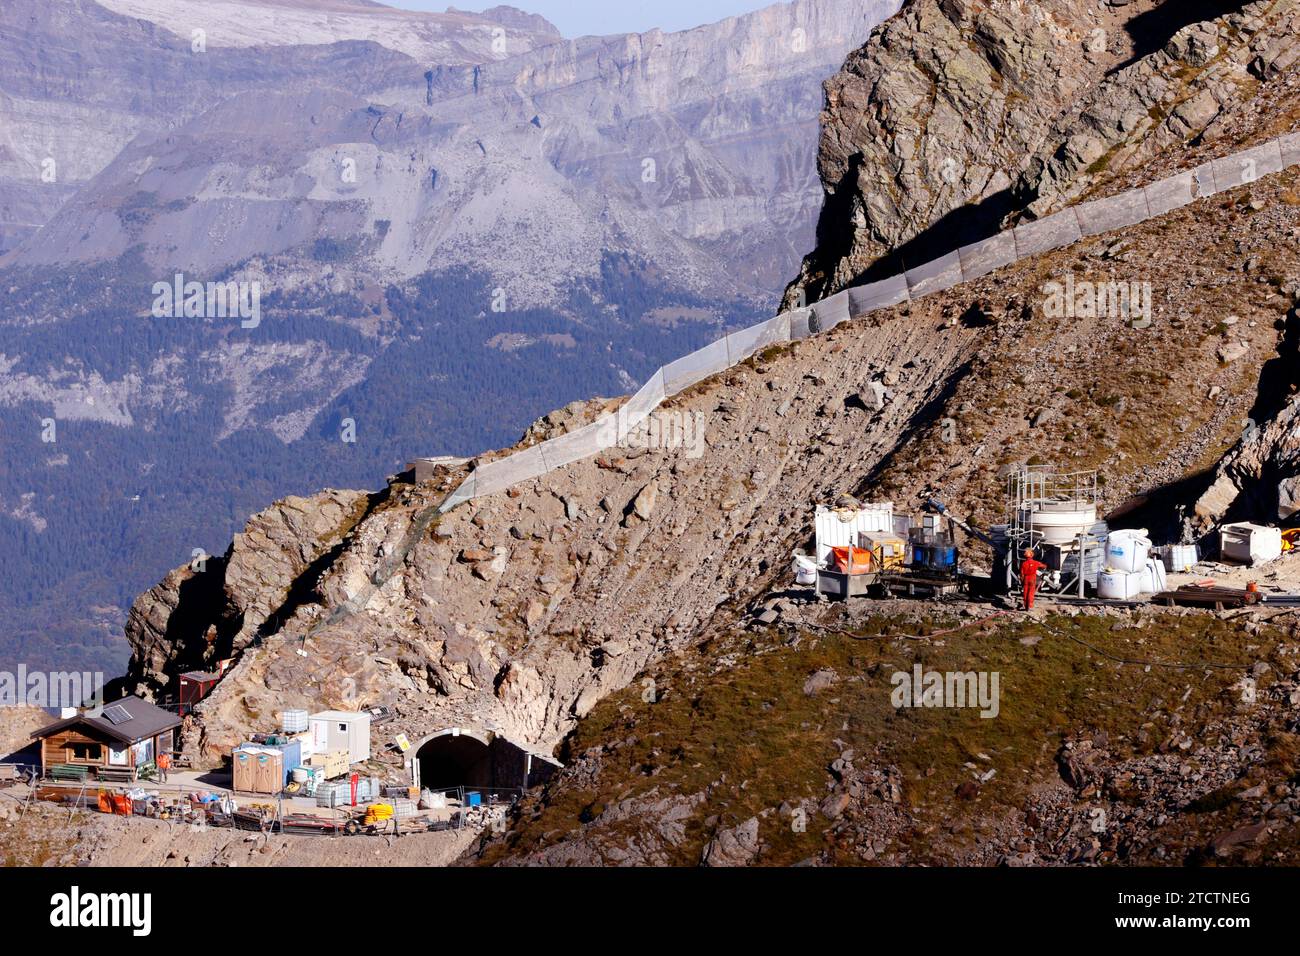 Alpi francesi. Cantiere sulla funivia del Monte bianco (TMB), la linea ferroviaria di montagna più alta della Francia. Capolinea a 2372 m. Saint Gervais. Francia. Foto Stock